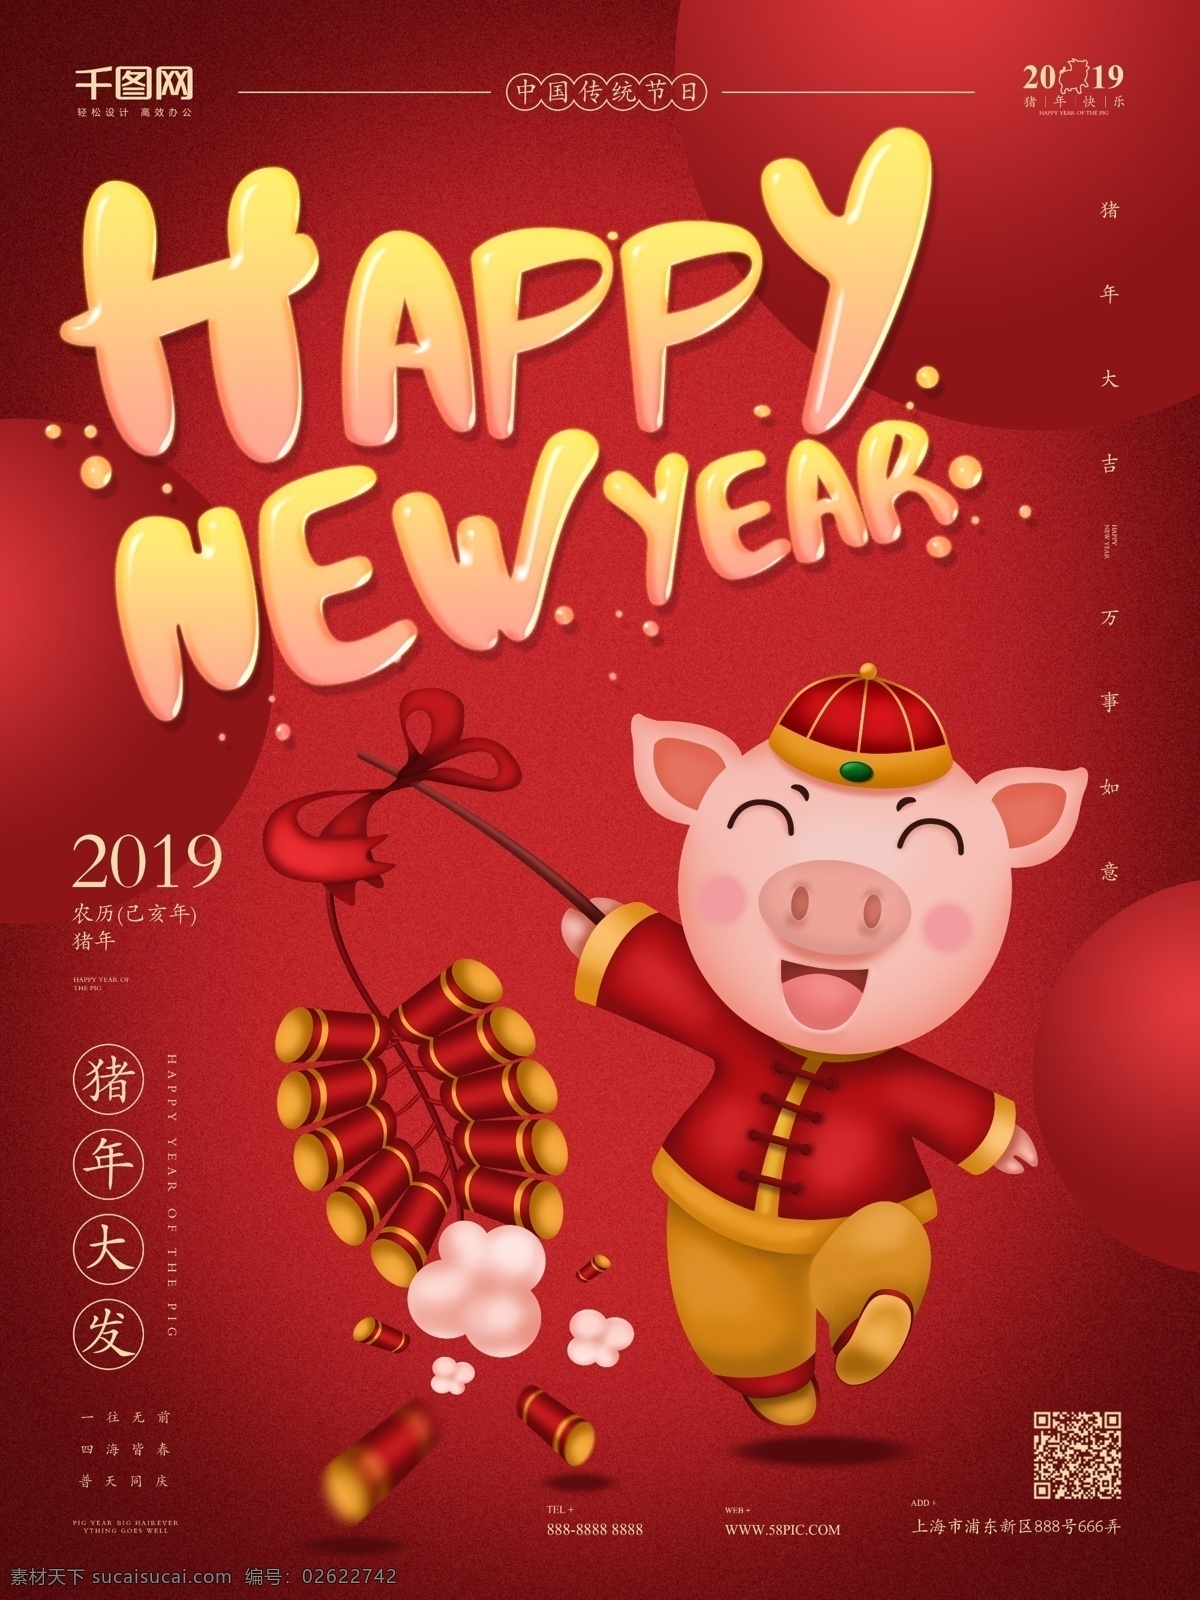 原创 手绘 猪年 海报 新年快乐 过年 喜庆 鞭炮 烟花 2019 卡通猪 猪年大发